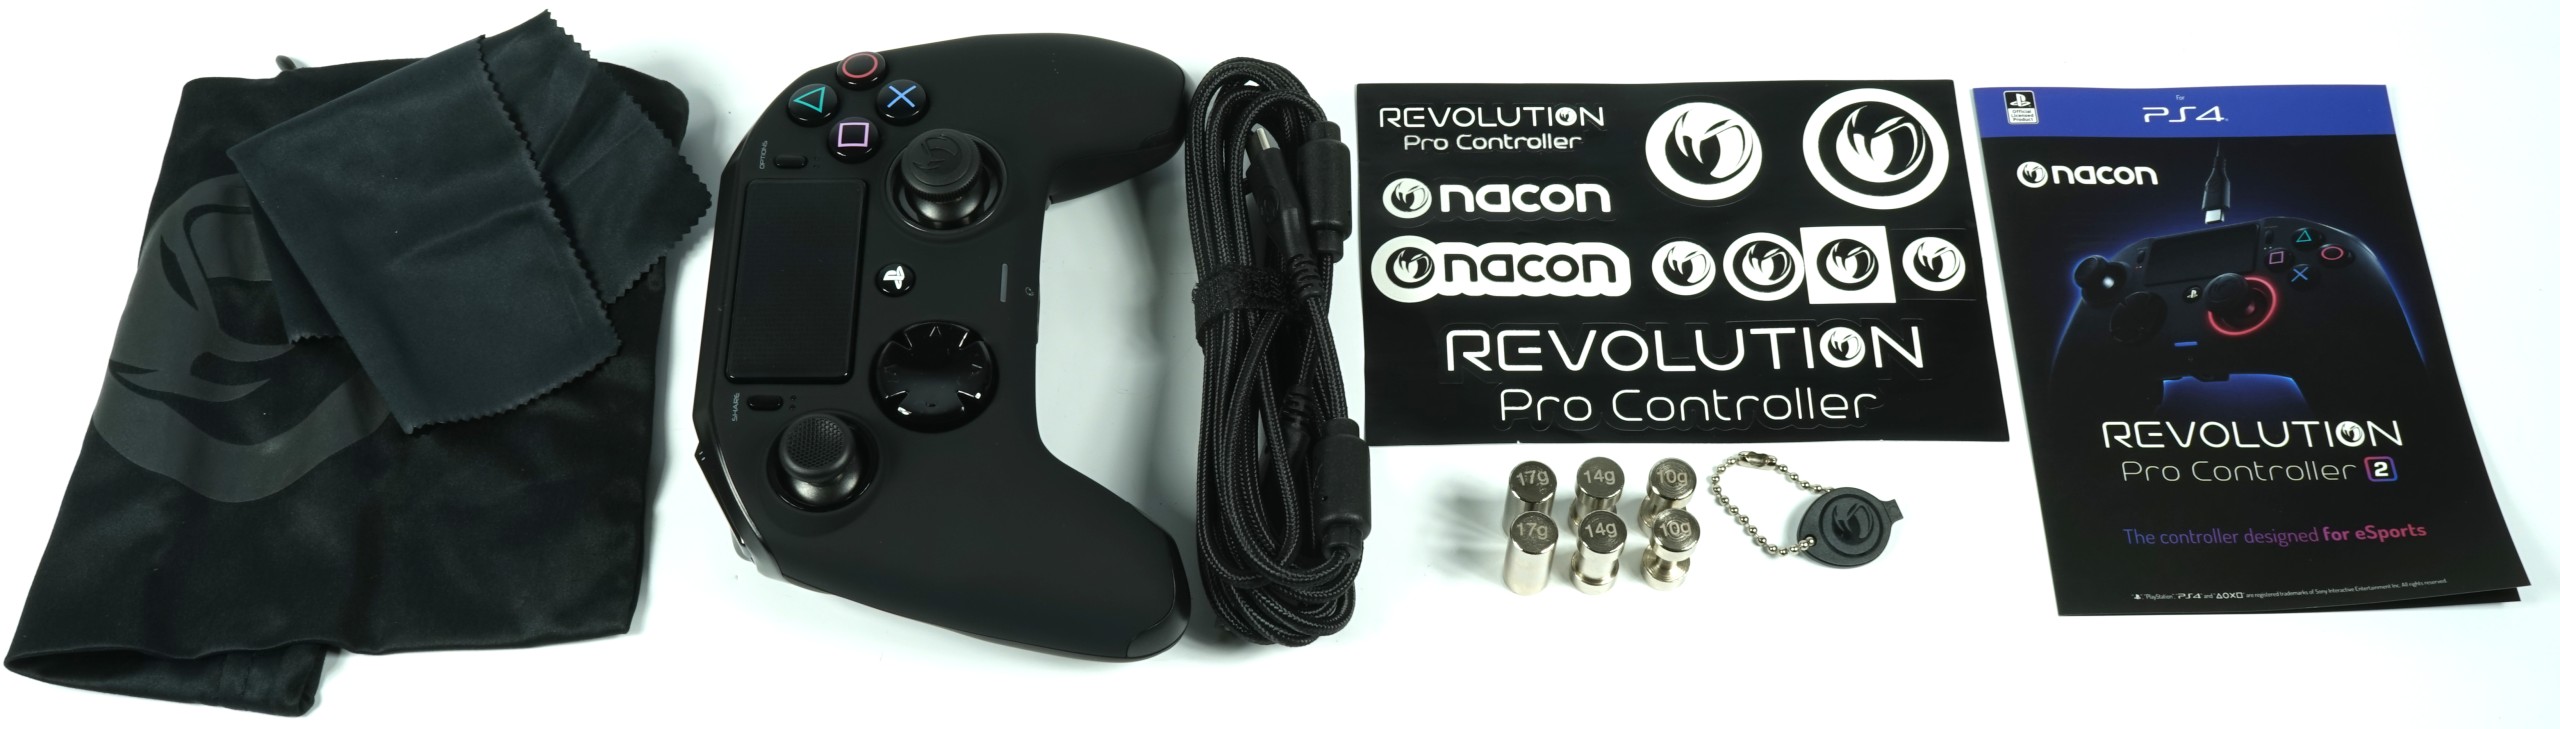 nacon revolution pro controller 2